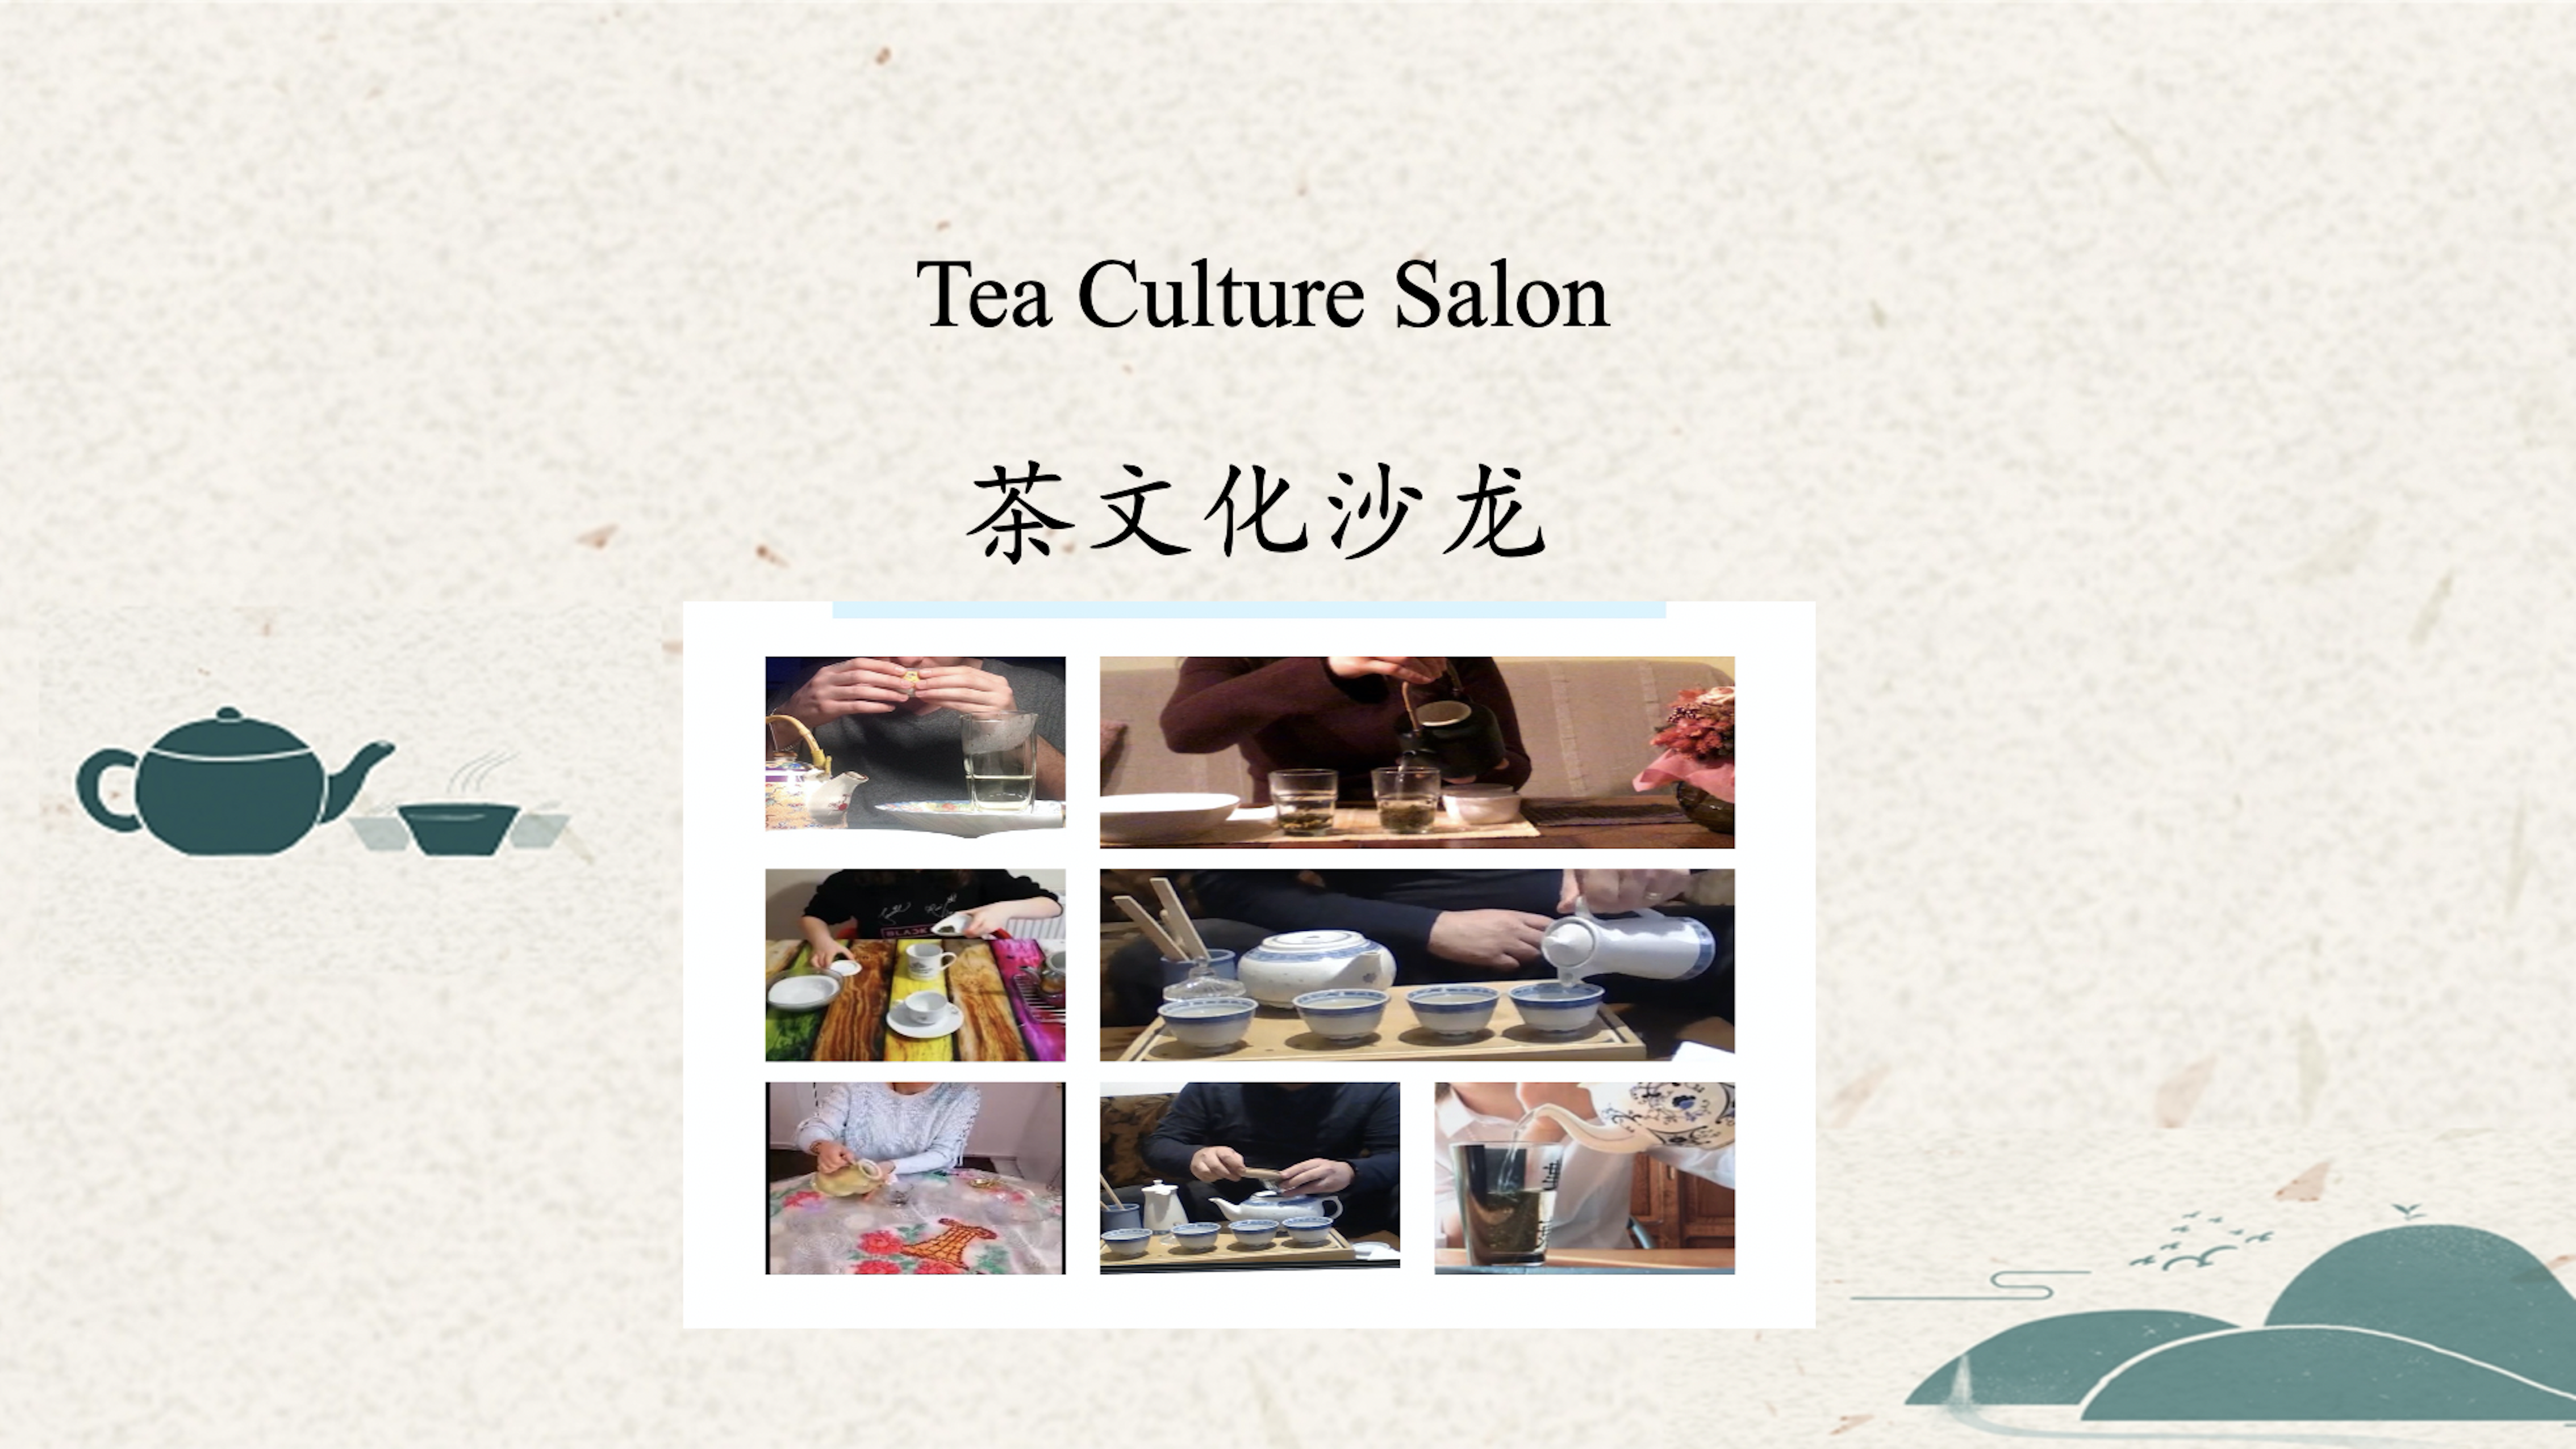 Tea culture salon